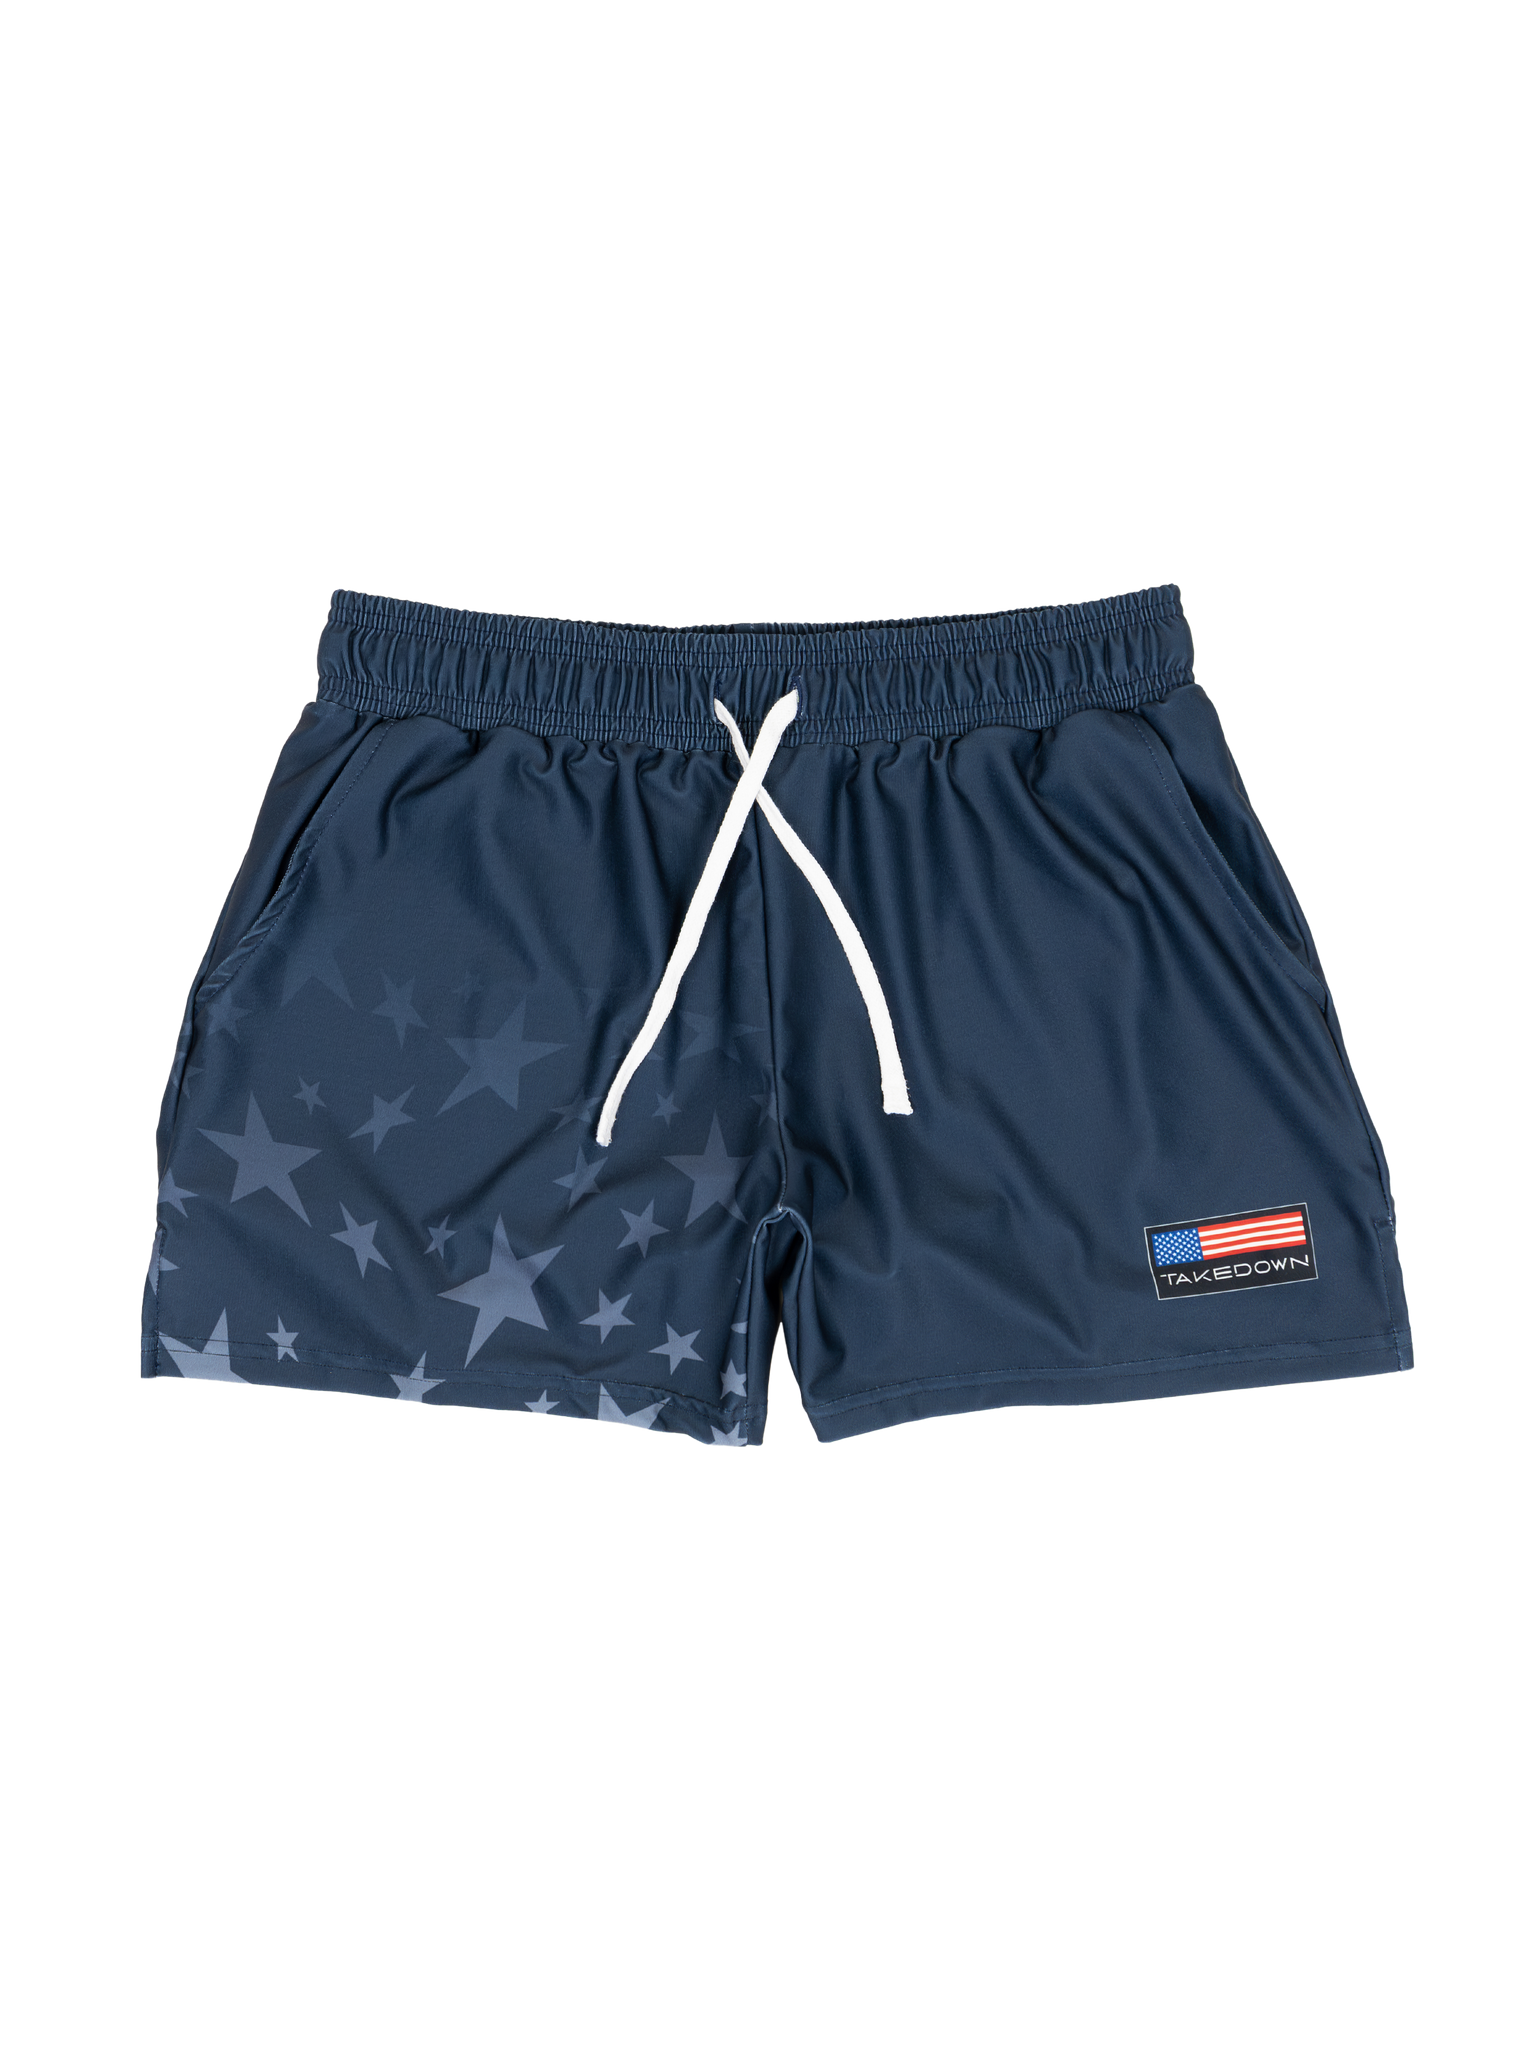 Gym Star Gym Shorts - Navy (5"&7" Inseam)